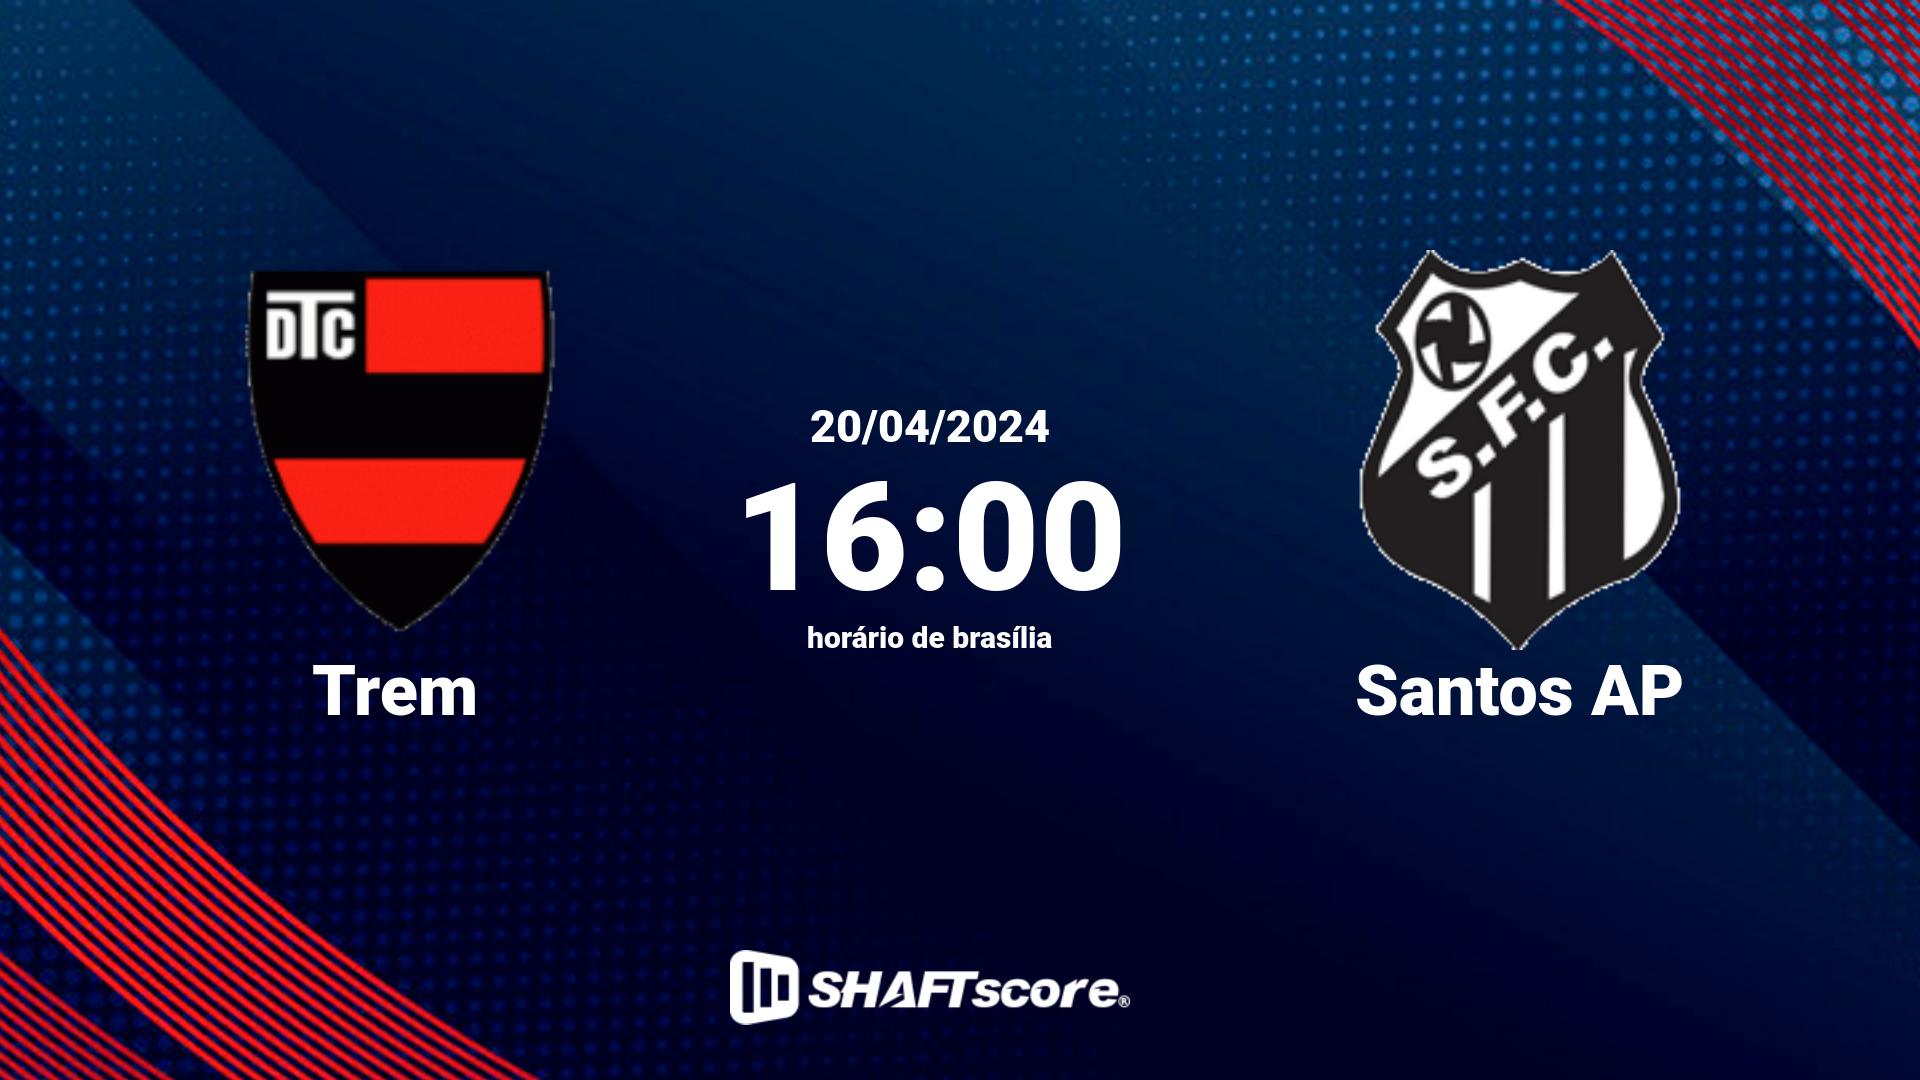 Estatísticas do jogo Trem vs Santos AP 20.04 16:00